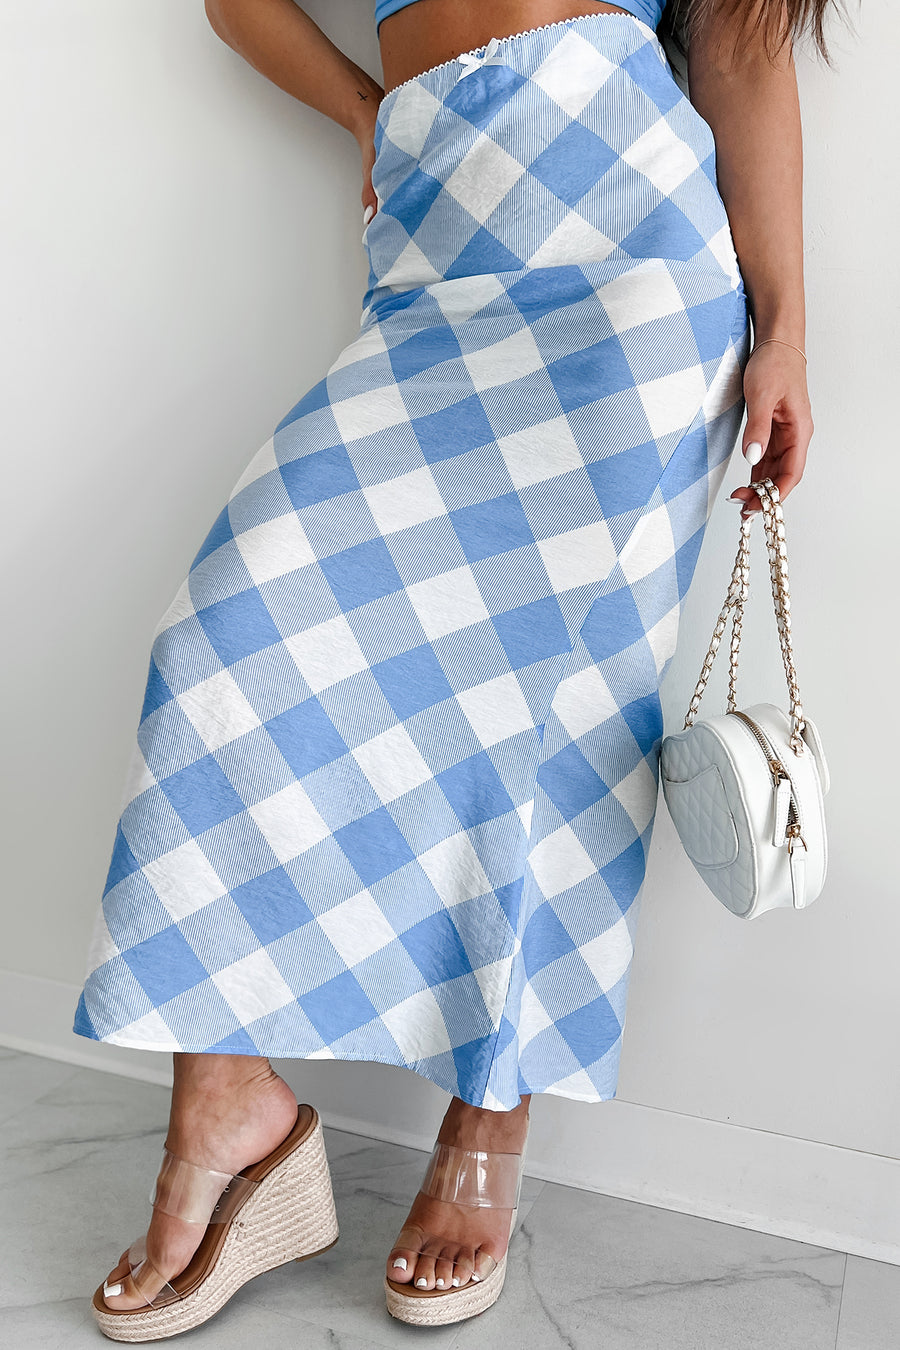 Campus Stroll Plaid Maxi Skirt (Blue/White) - NanaMacs